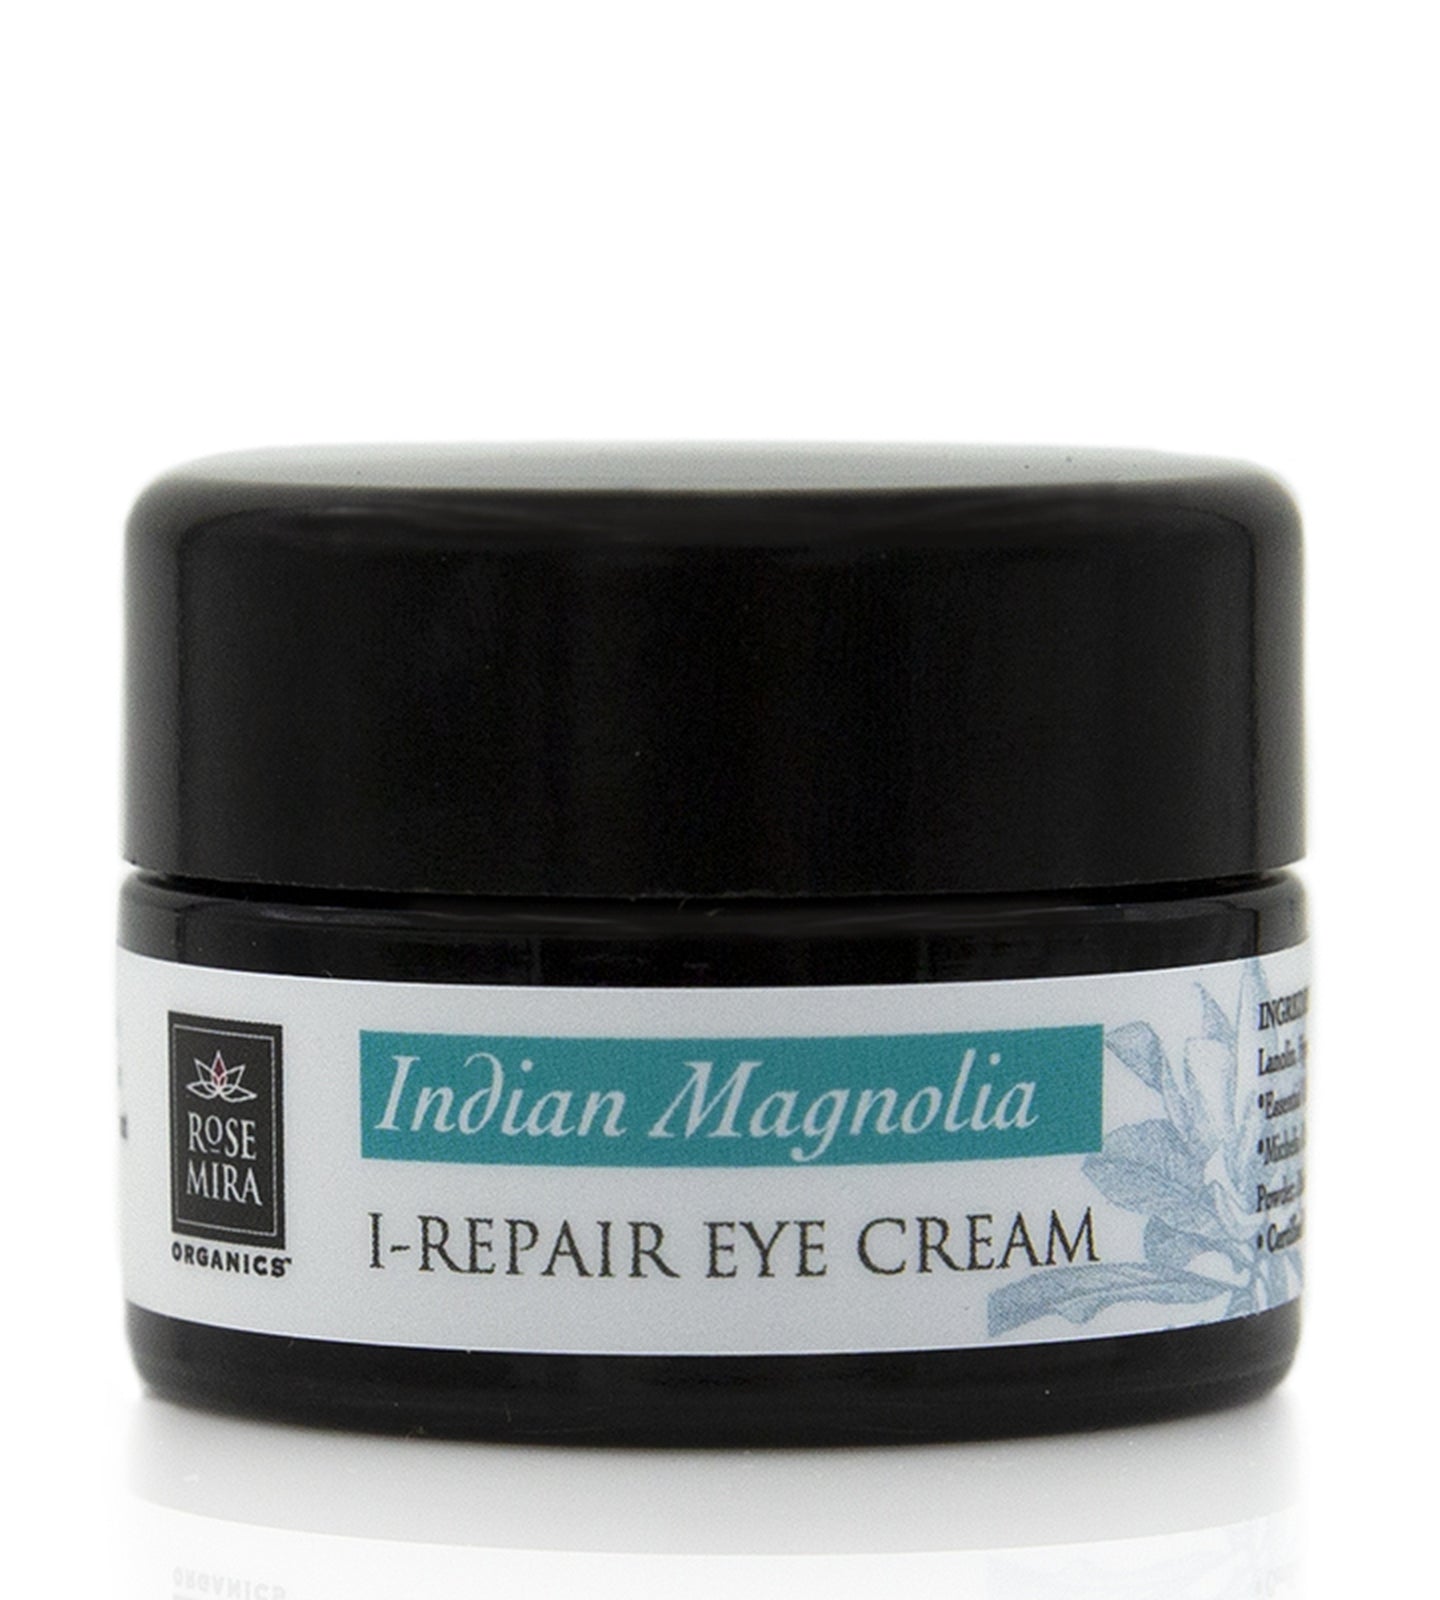 Indian Magnolia I-Repair Eye Cream